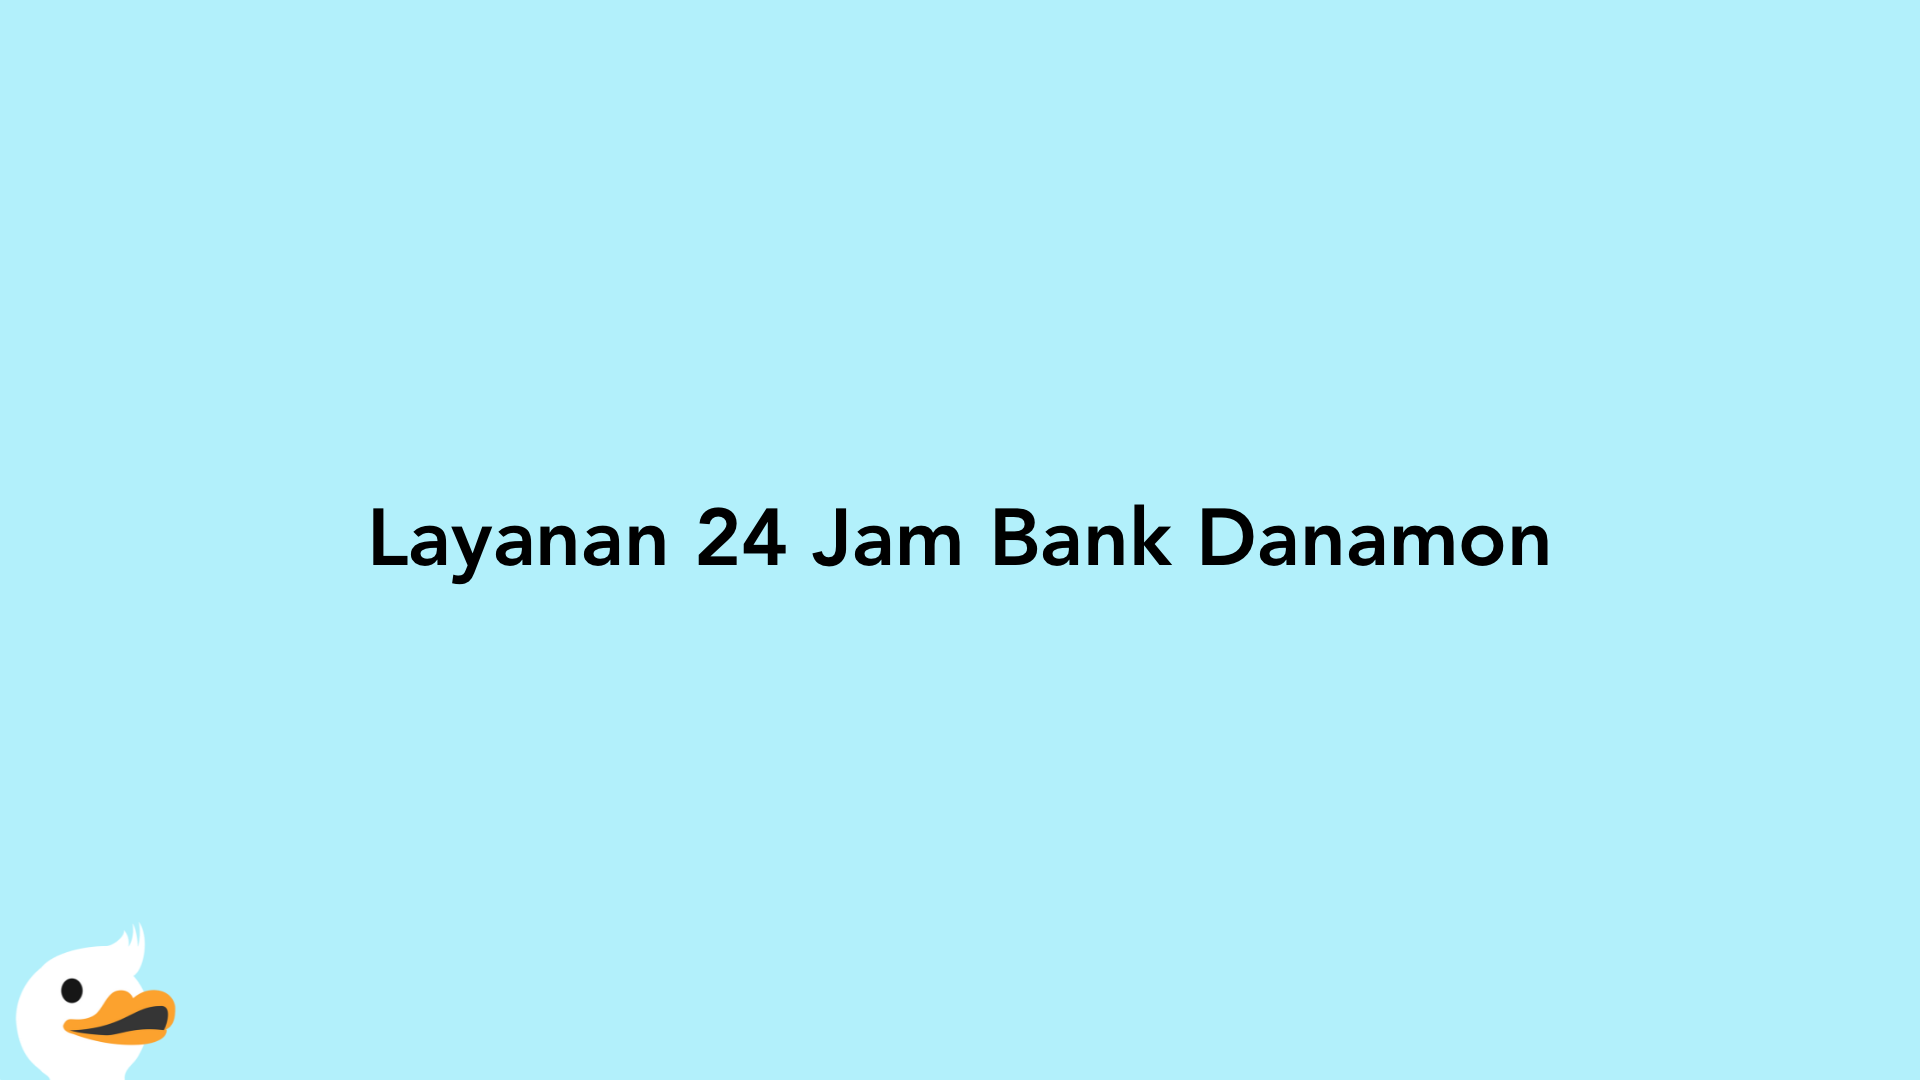 Layanan 24 Jam Bank Danamon